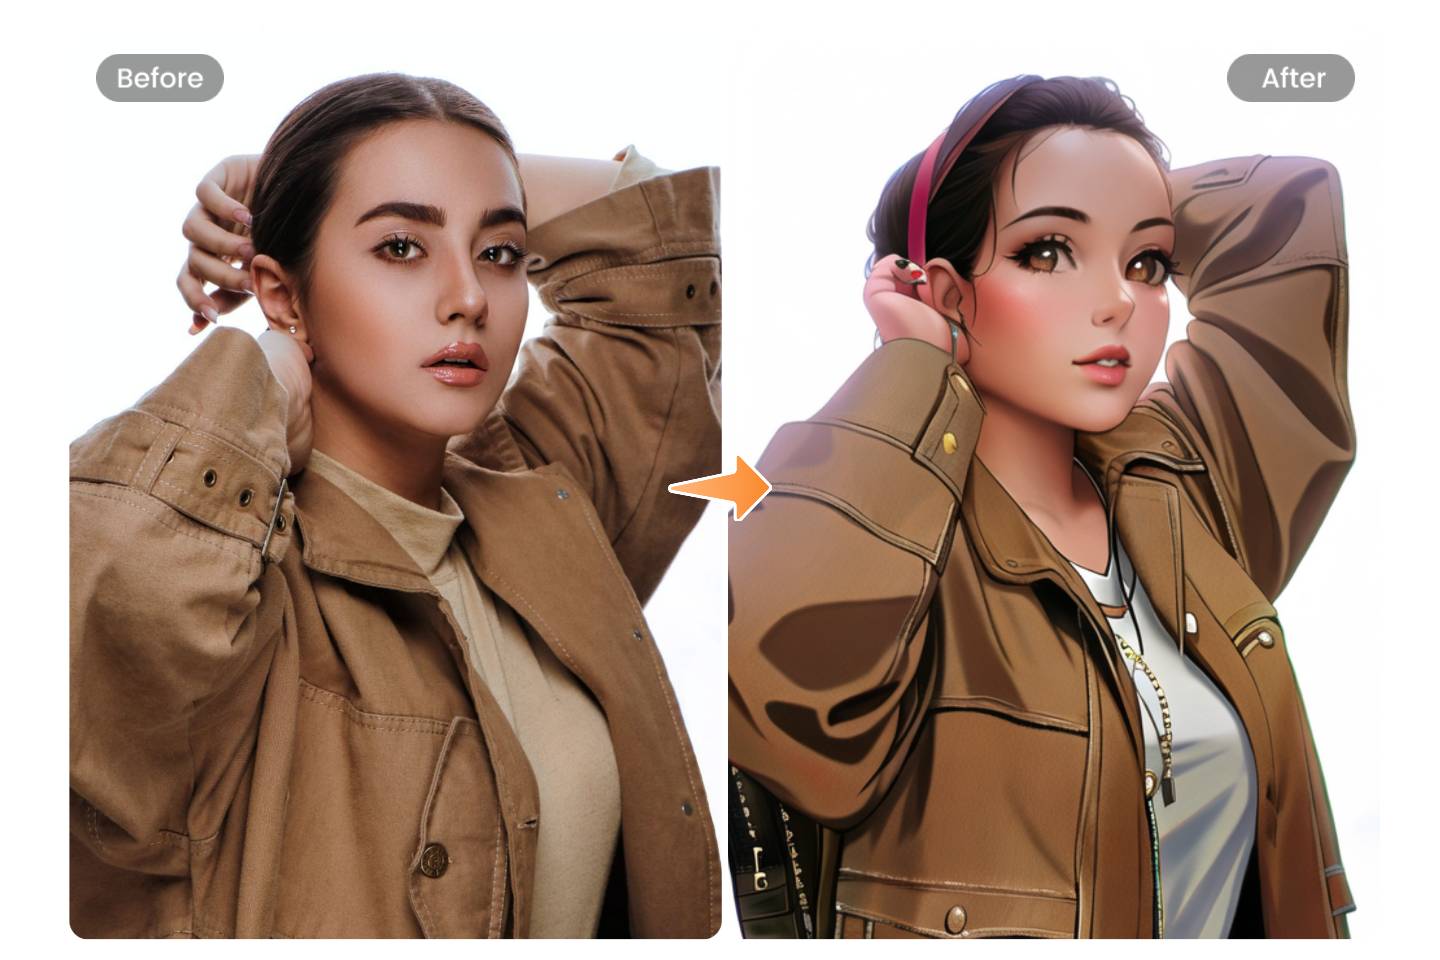 Aplique el filtro de anime para la mujer con un abrigo marrón oscuro